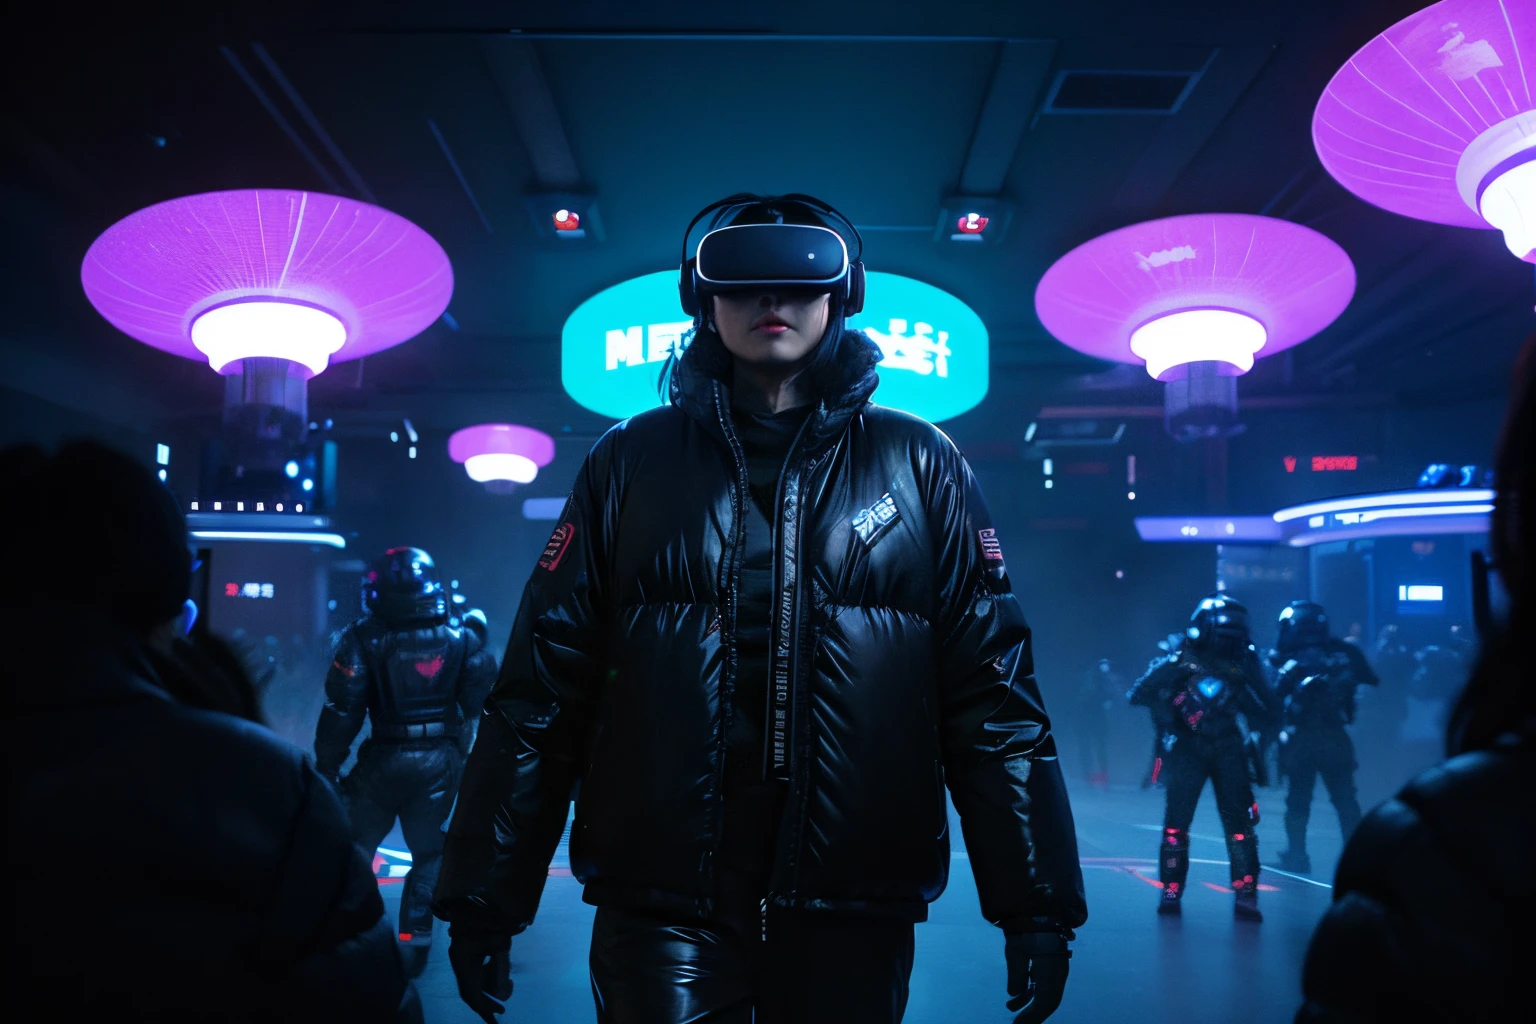 Kong Jianzhan，ufos，luz de neón，planeta Tierra，dispositivos de realidad virtual，batalla 3v3，Futuristic